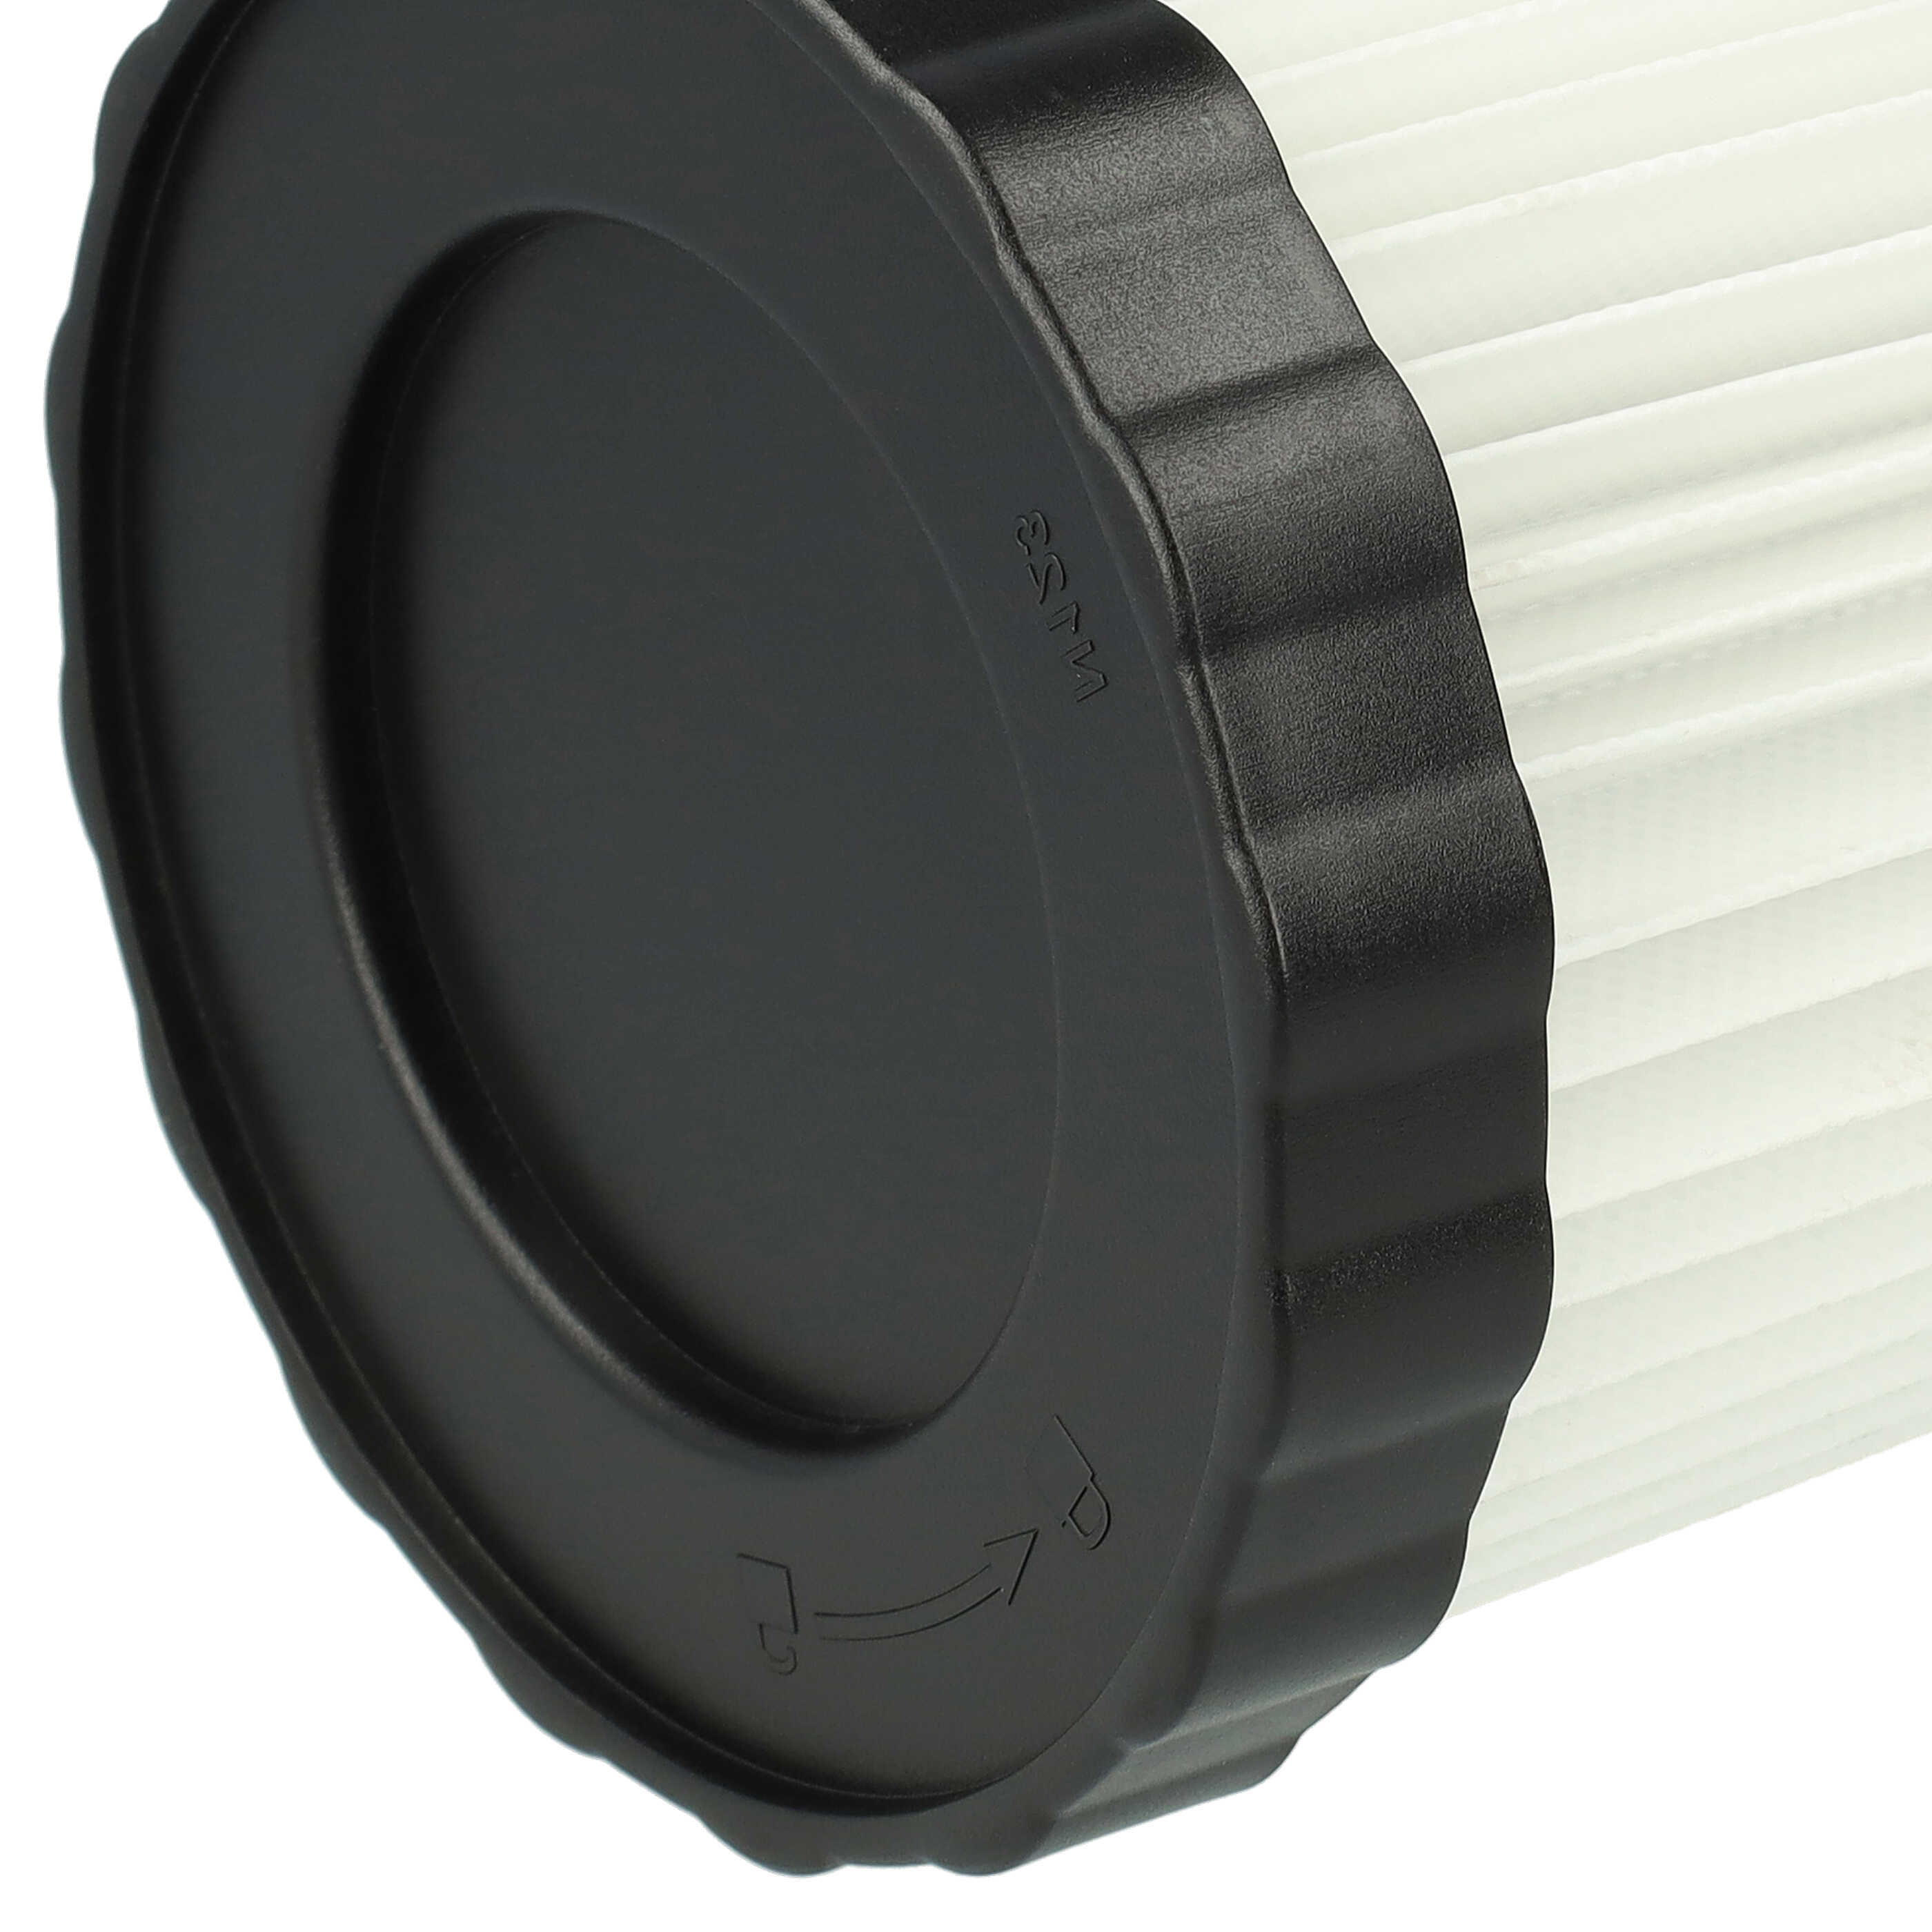 2x Filtro reemplaza Bosch 1 600 A01 1RT, 3165140917940, 2 608 000 663 para aspiradora - filtro plisado, blanco